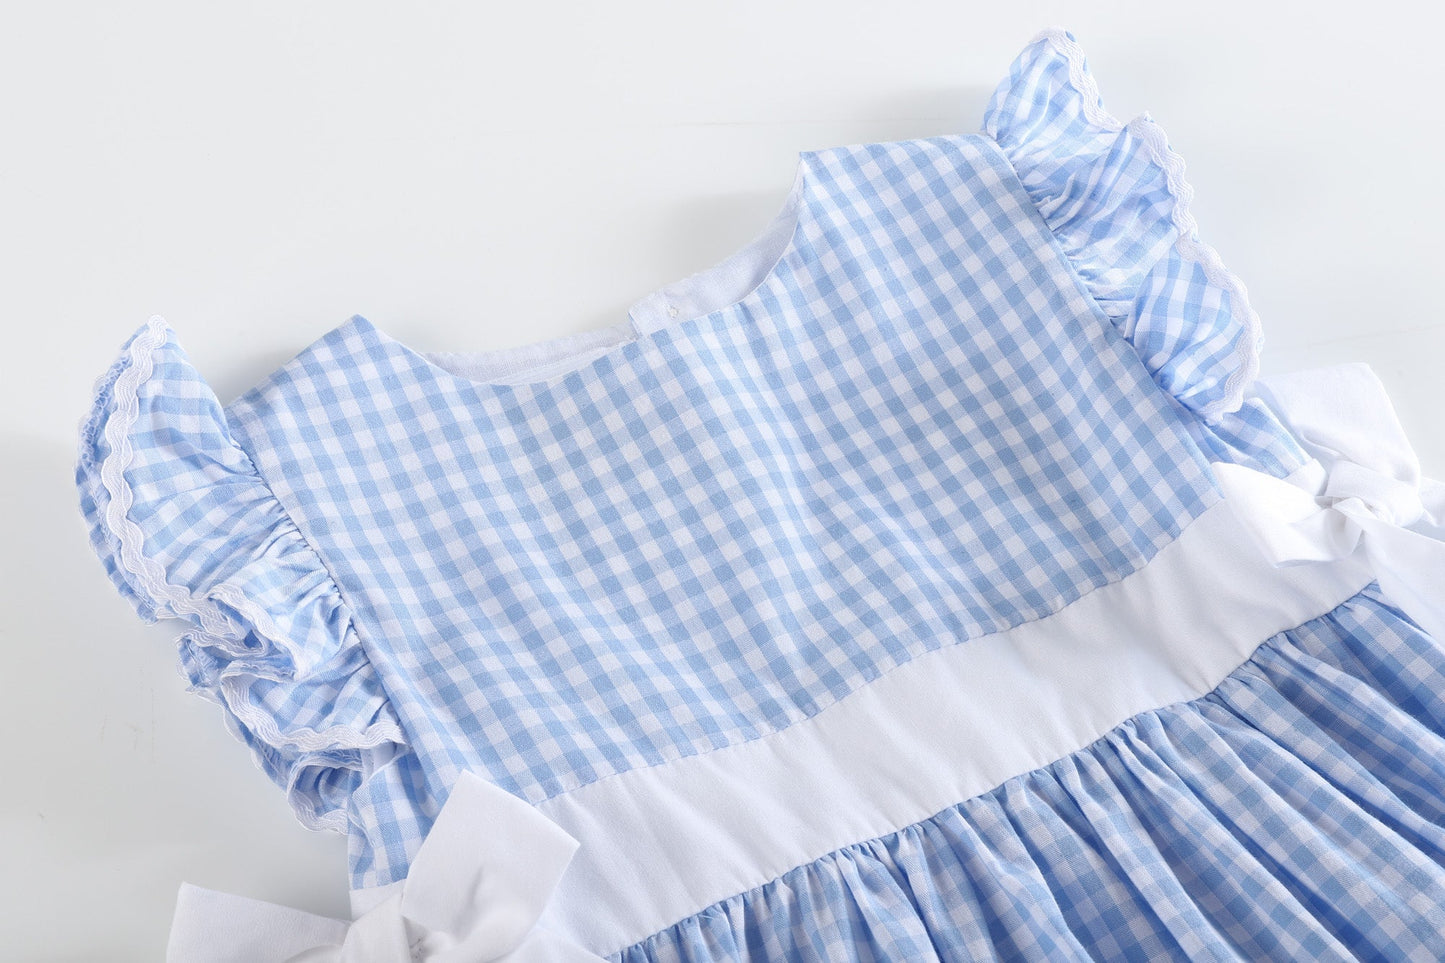 Girls’ Light Blue Gingham A-Line Dress